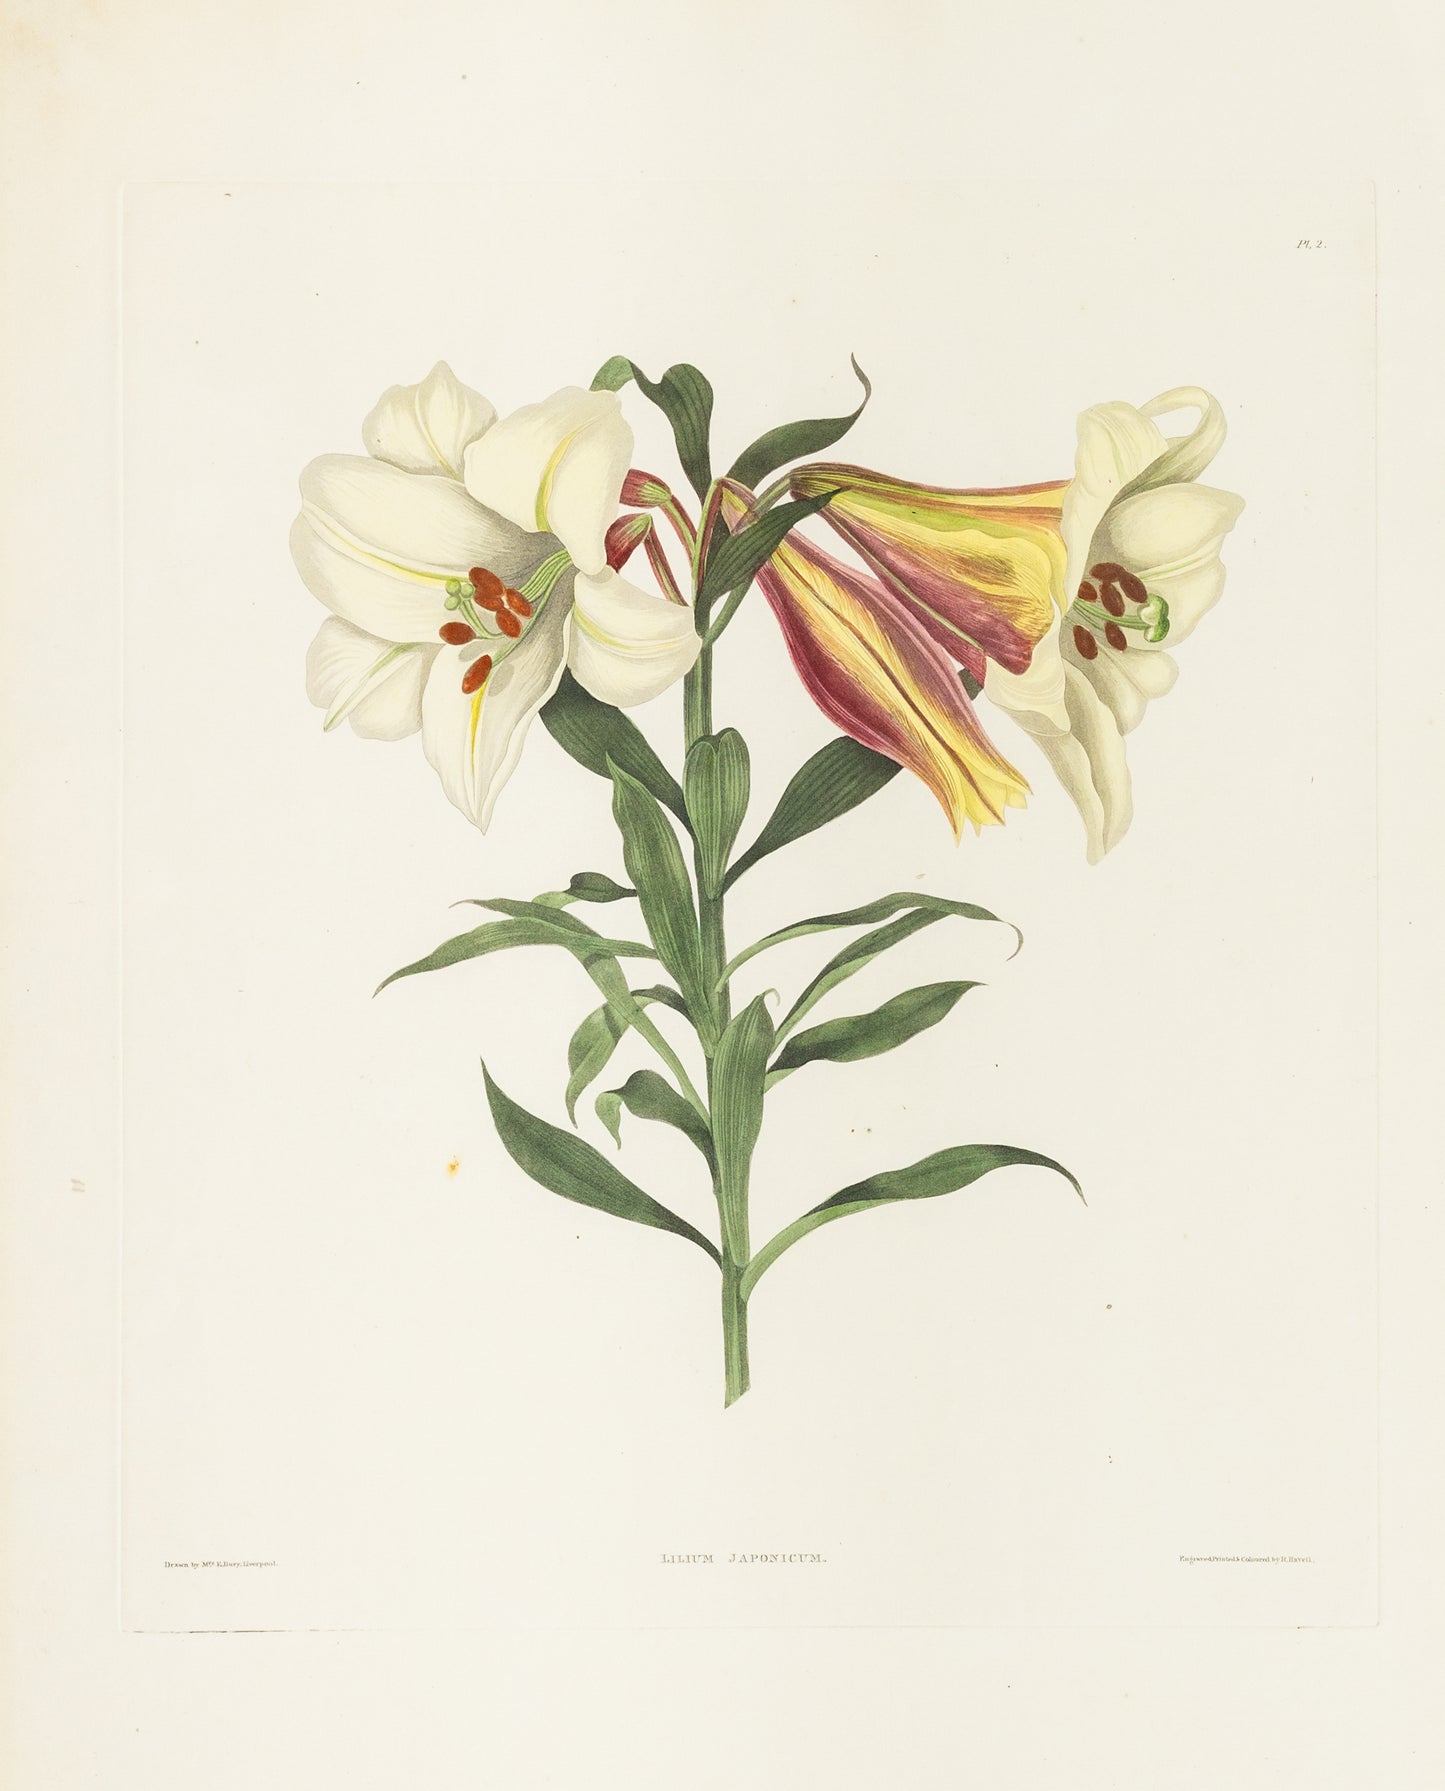 Falkner Bury, Priscilla Susan. Lilium Japonicum, Plate 2. London, 1831-34.